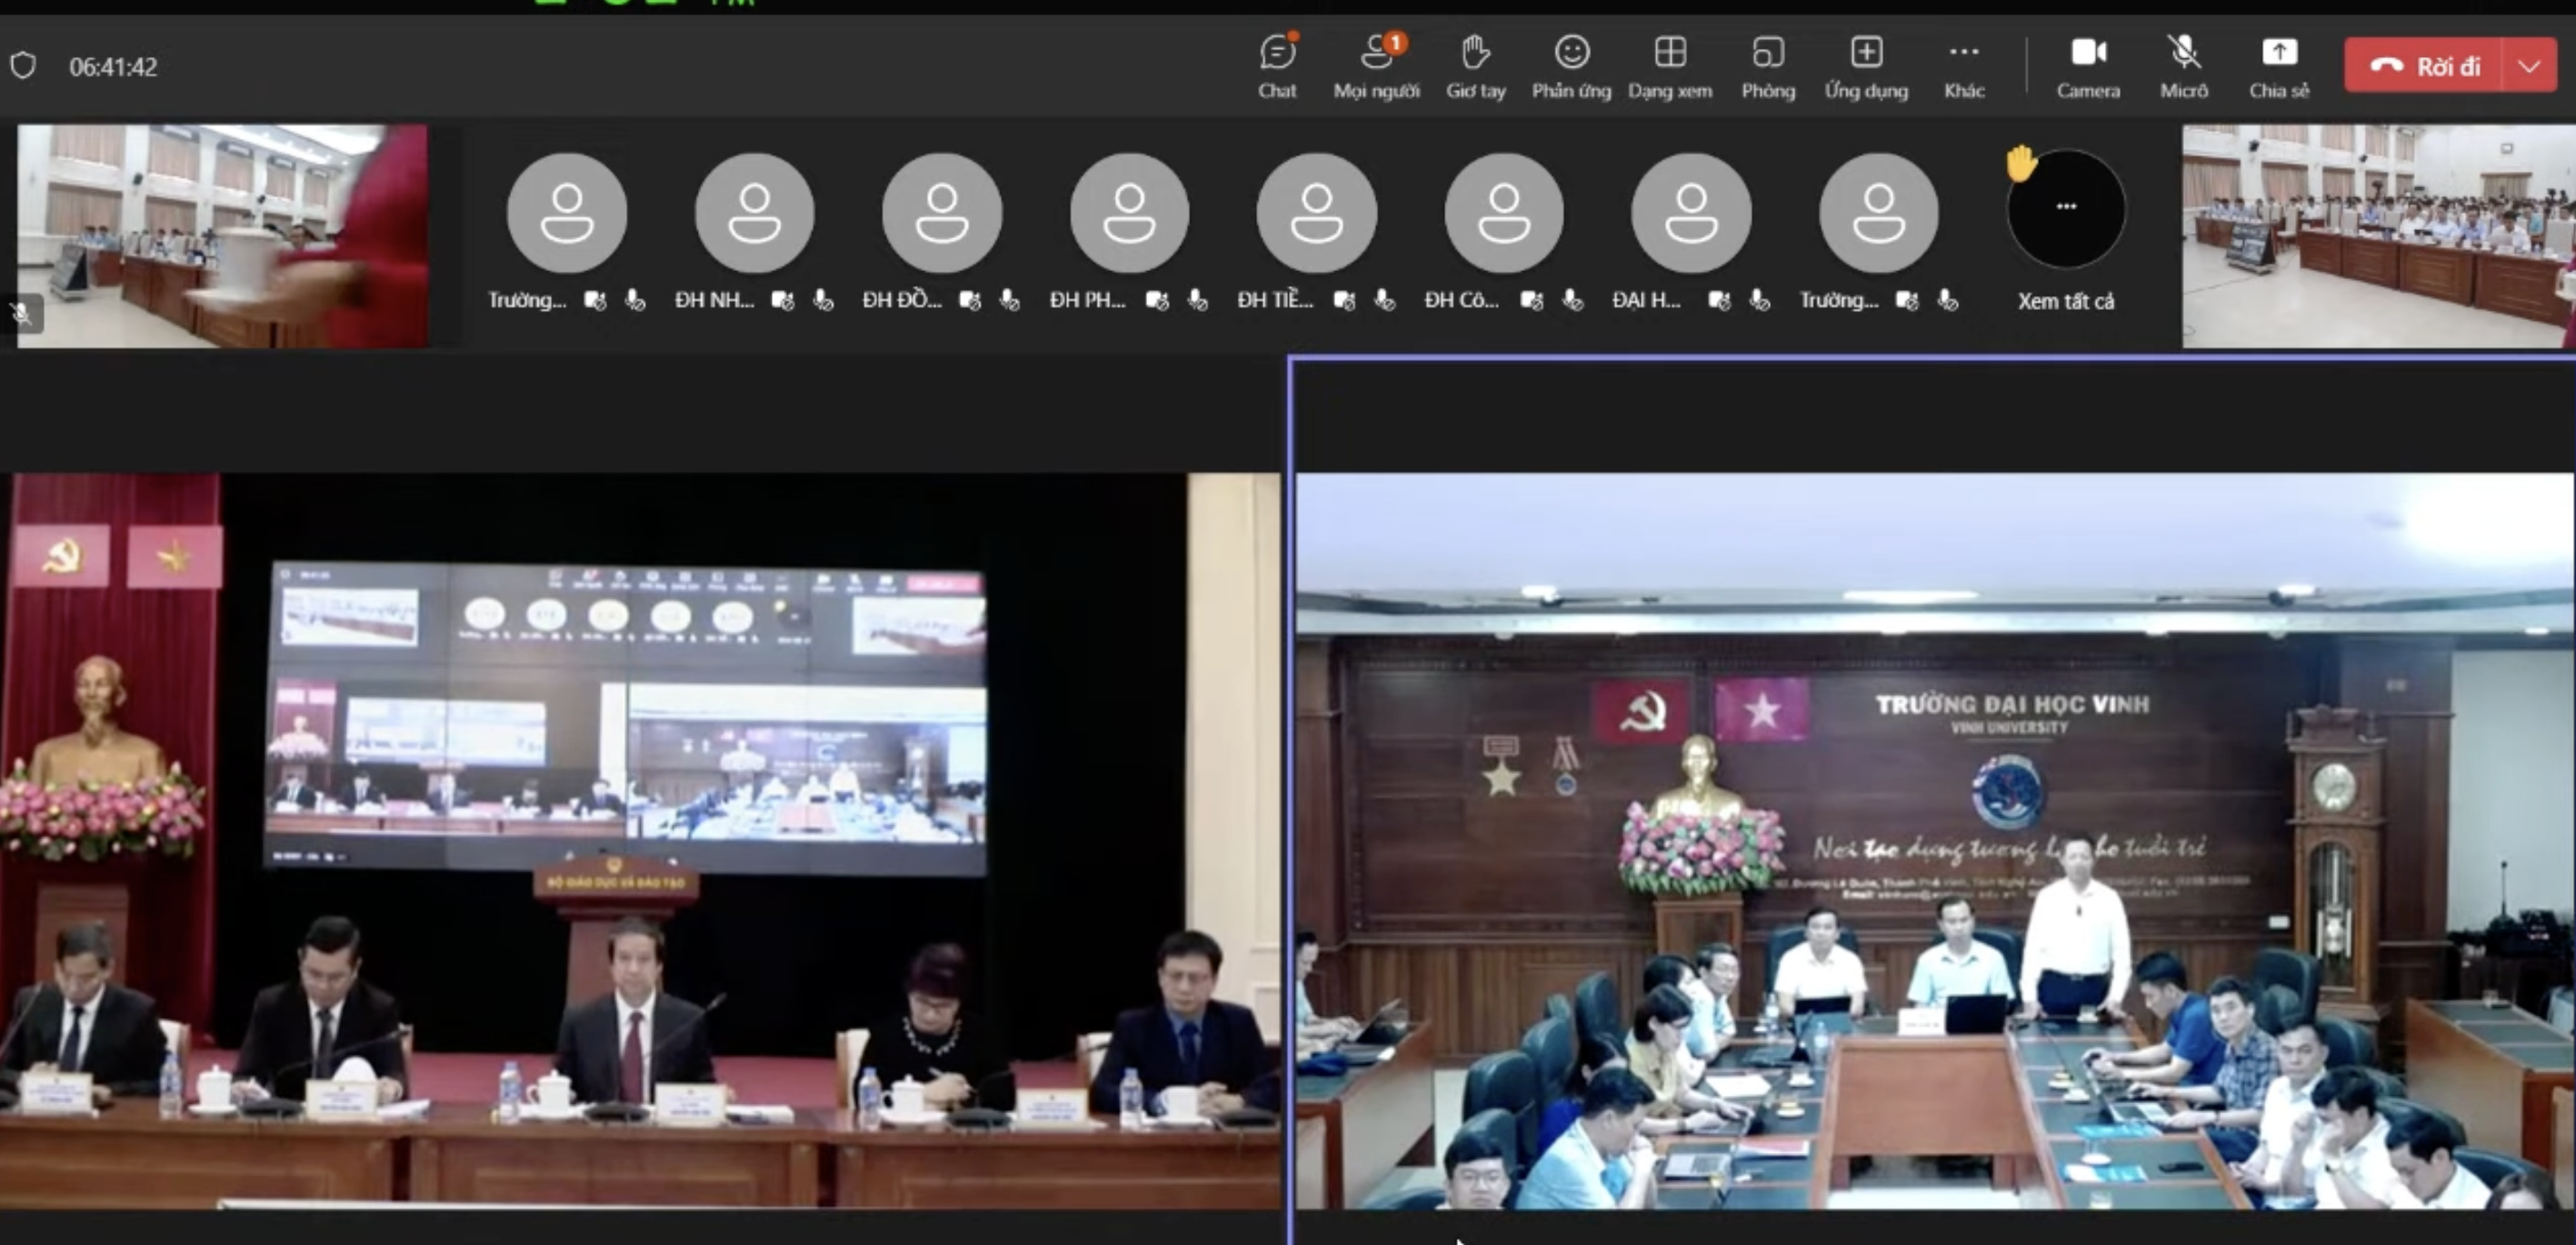 Thầy Đinh Ngọc Thắng, giảng viên Trường Đại học Vinh đề cập đến vấn đề đạo đức nhà giáo tại buổi gặp gỡ với người đứng đầu ngành giáo dục chiều ngày 15.8. Ảnh chụp màn hình